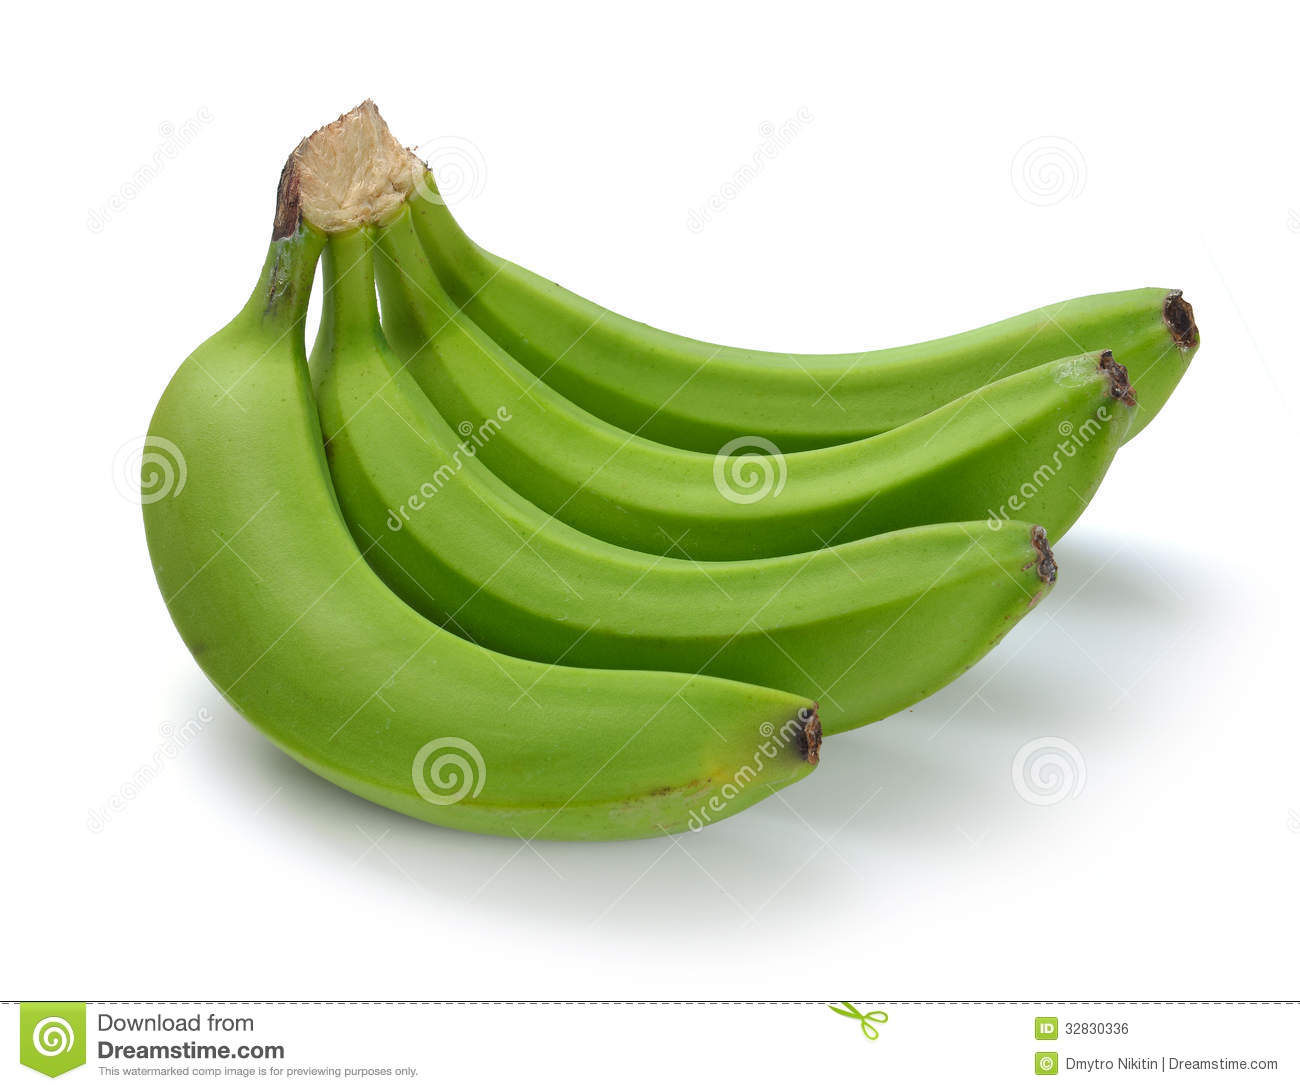 Green banana clipart.